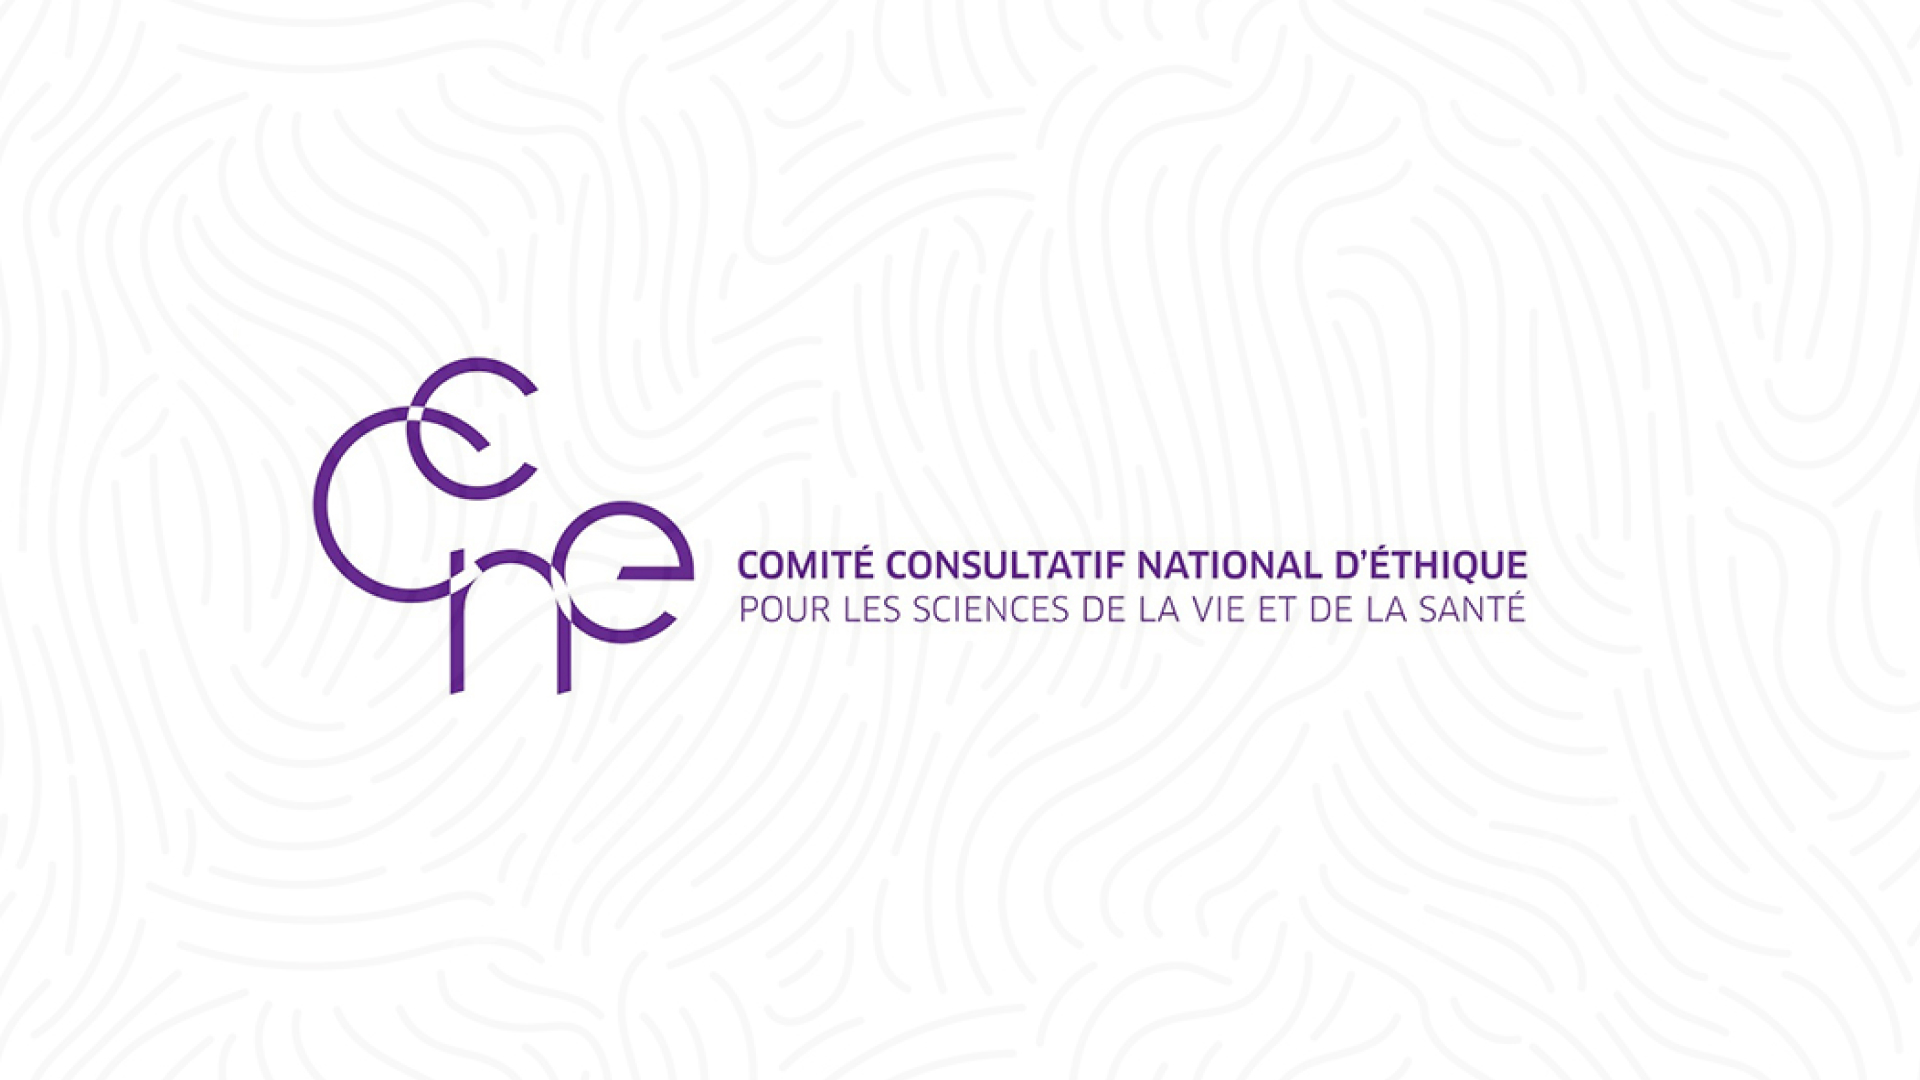 Comité consultatif national d'éthique pour les sciences de la vie et de la santé